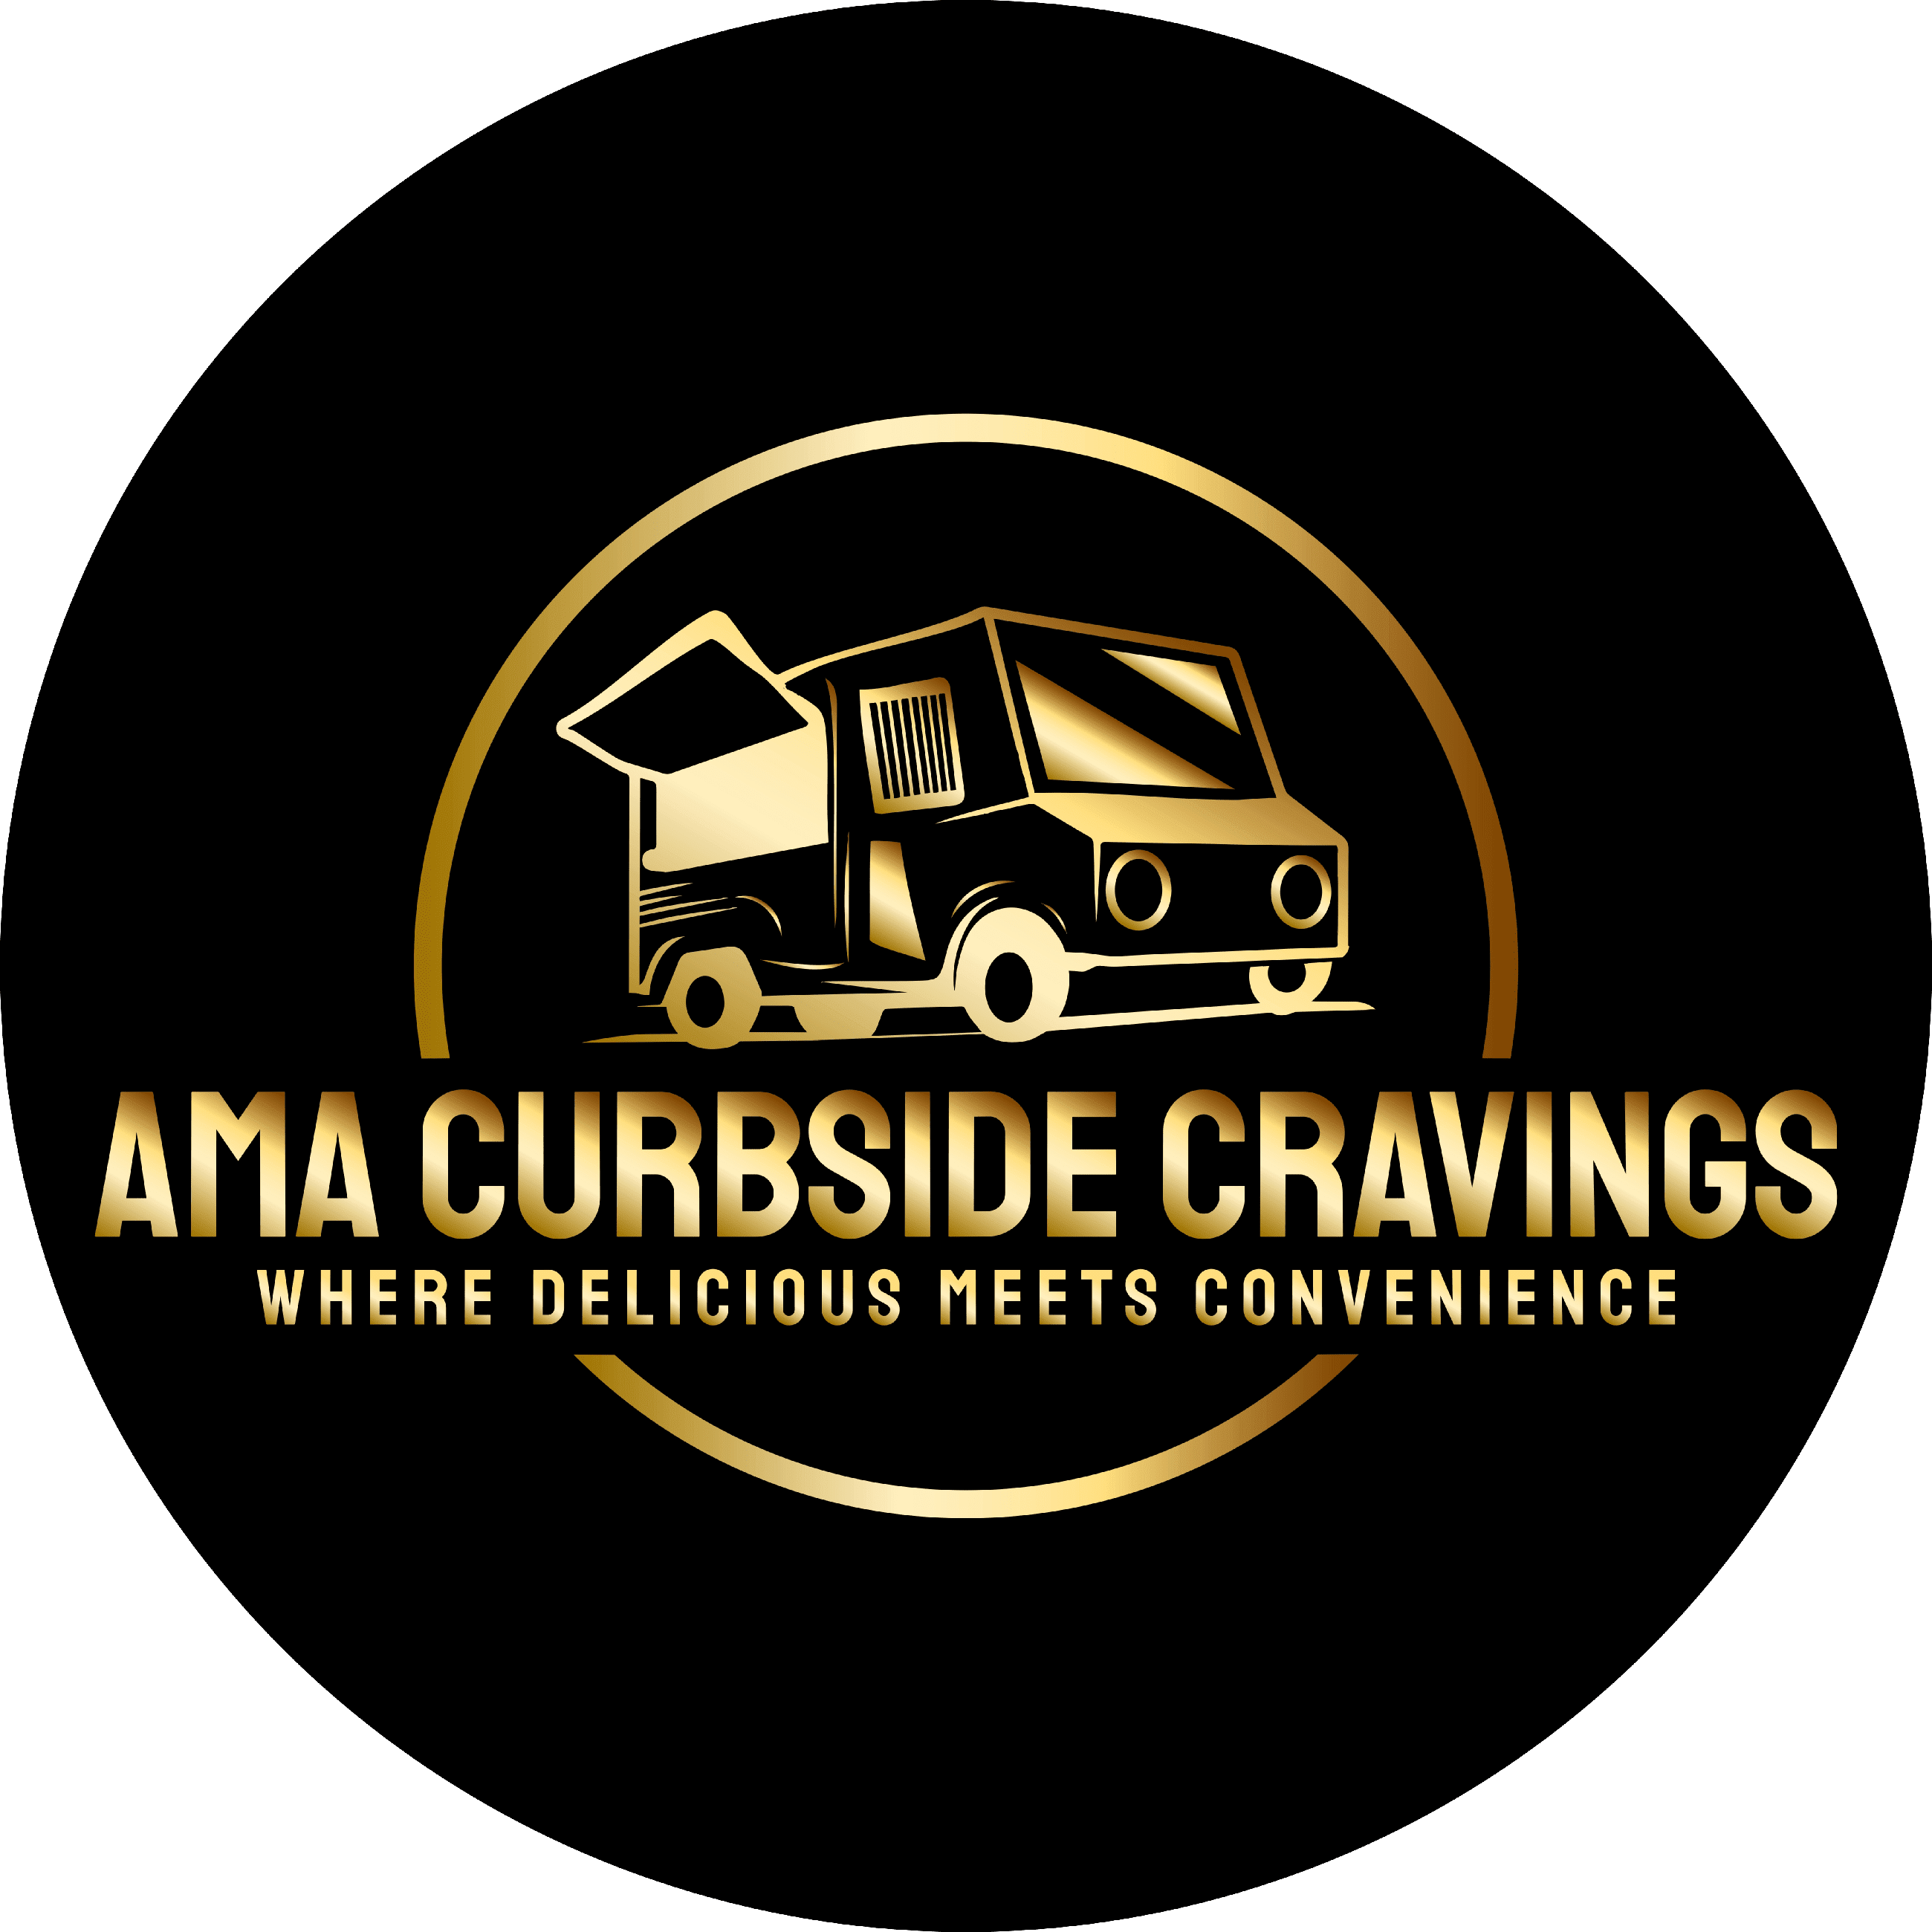 AMA Curbside Cravings